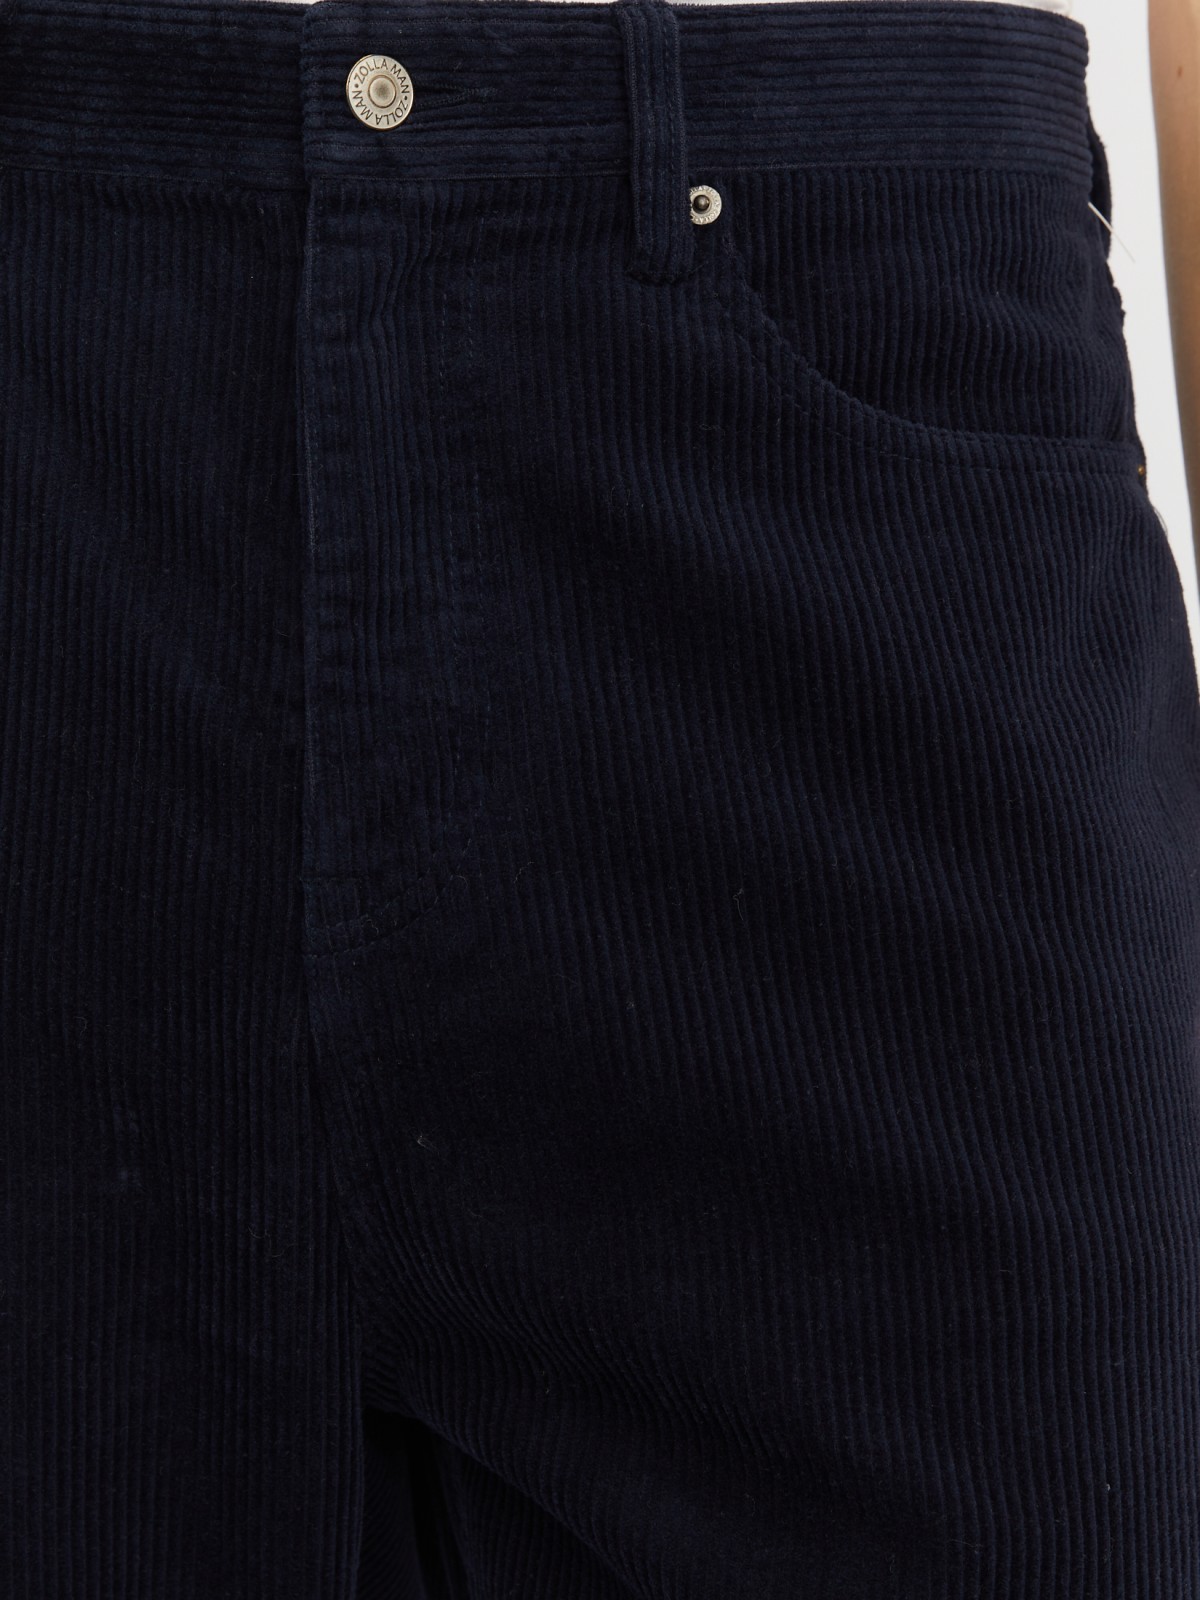 Вельветовые брюки фасона Carrot из хлопка zolla 213427372011, цвет синий, размер 30 - фото 3